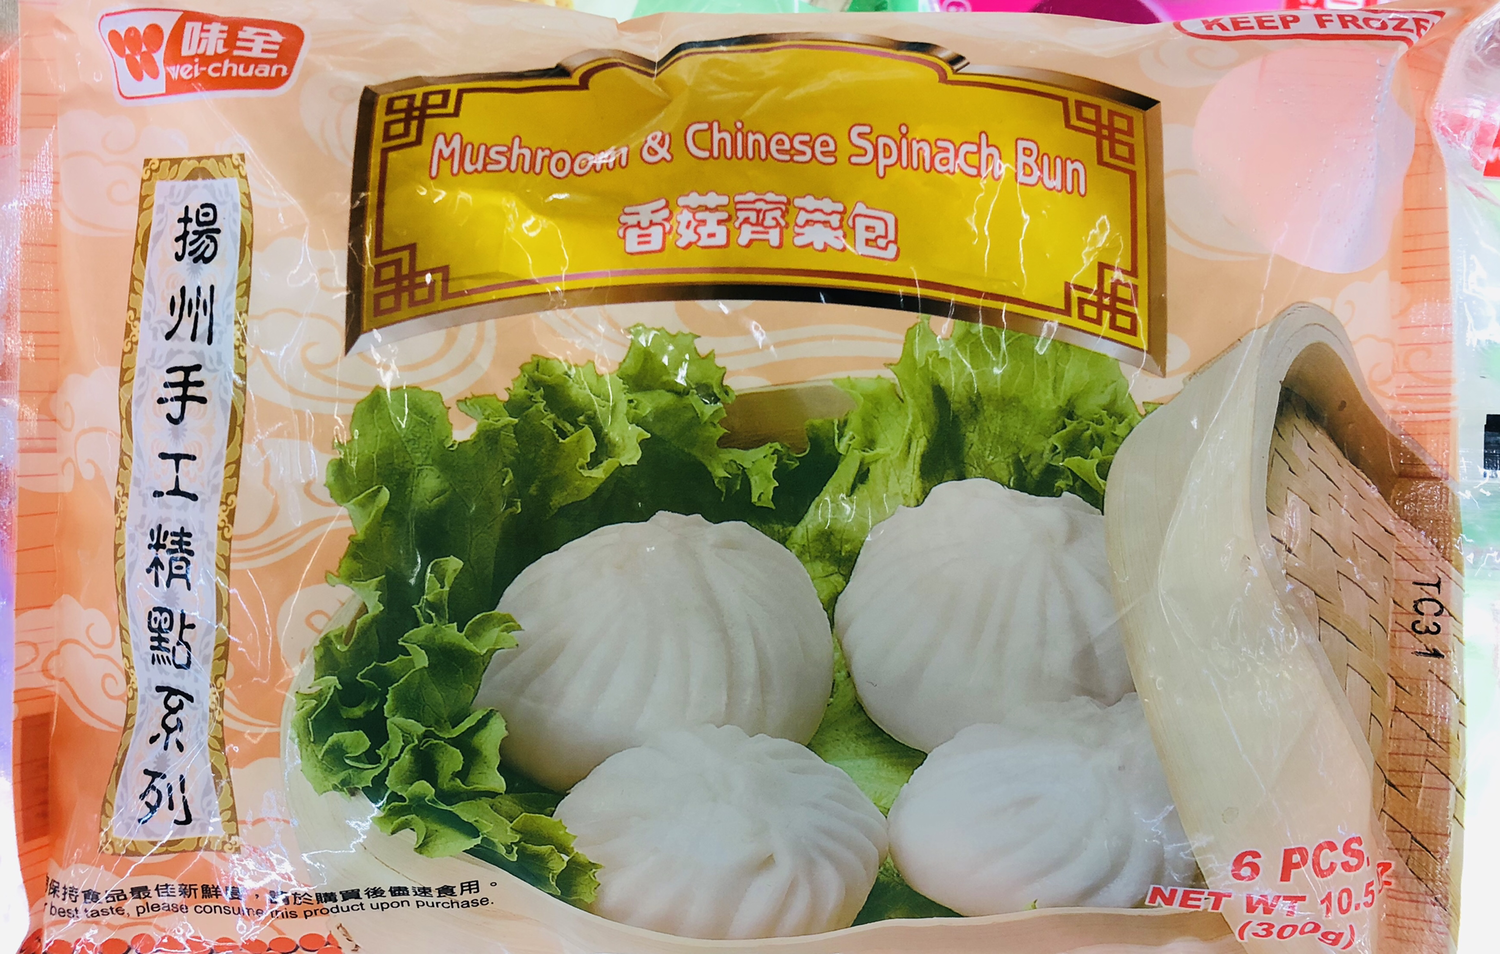 味全扬州手工香菇荠菜包 Vegetable Mushroom Bun ~6PCS.10.5oz(300g)​​